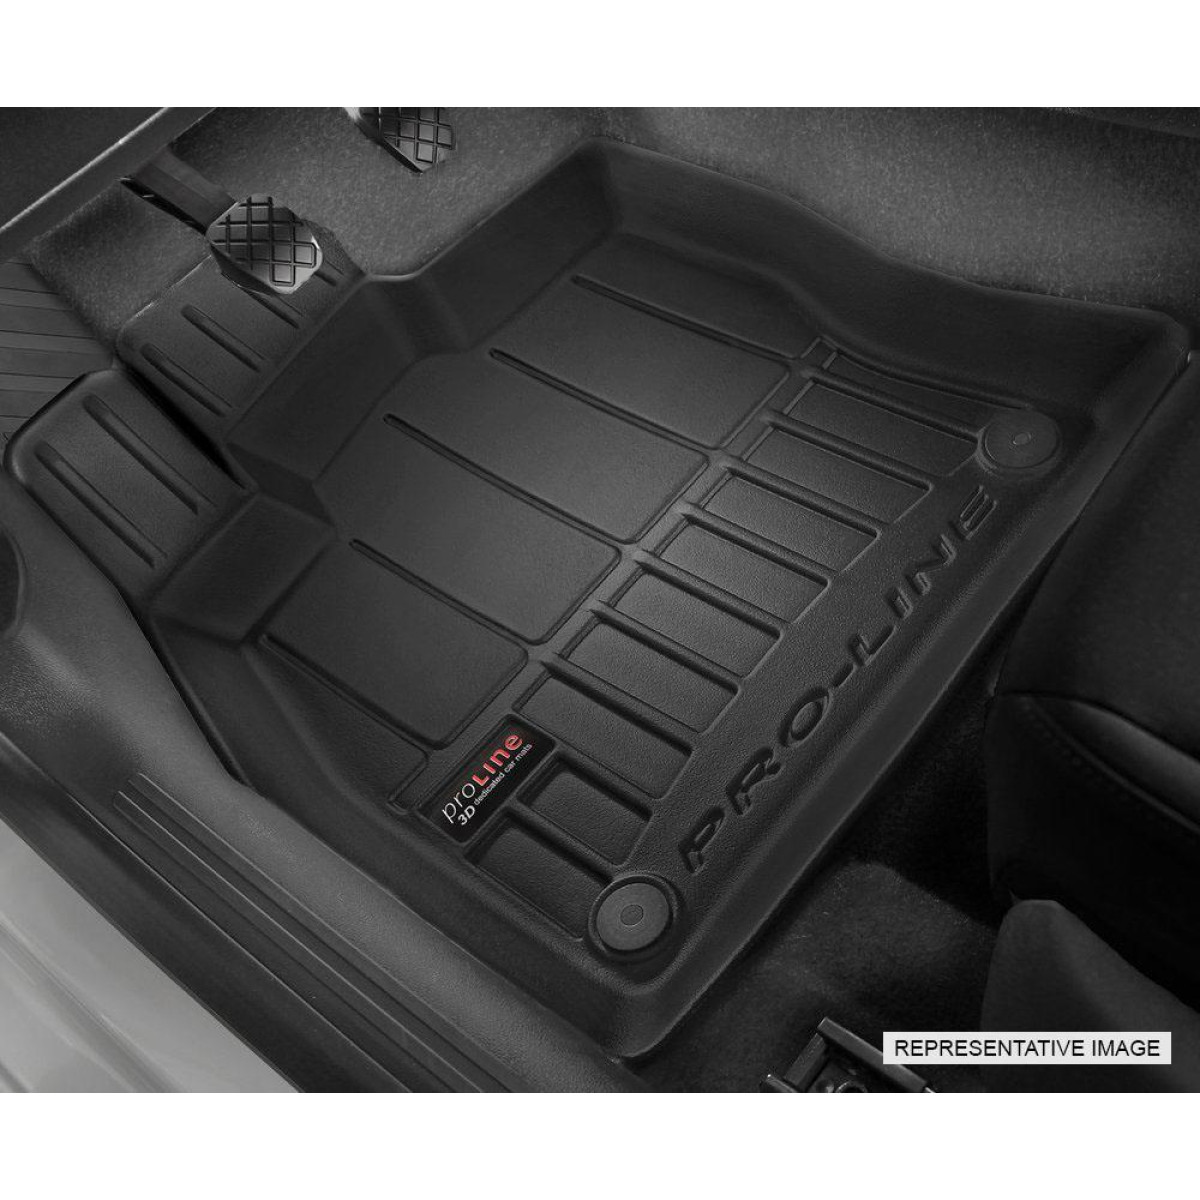 Guminiai kilimėliai Proline Subaru Outback IV 2009-2014m. / Automatic gearbox / paaukštintais kraštais